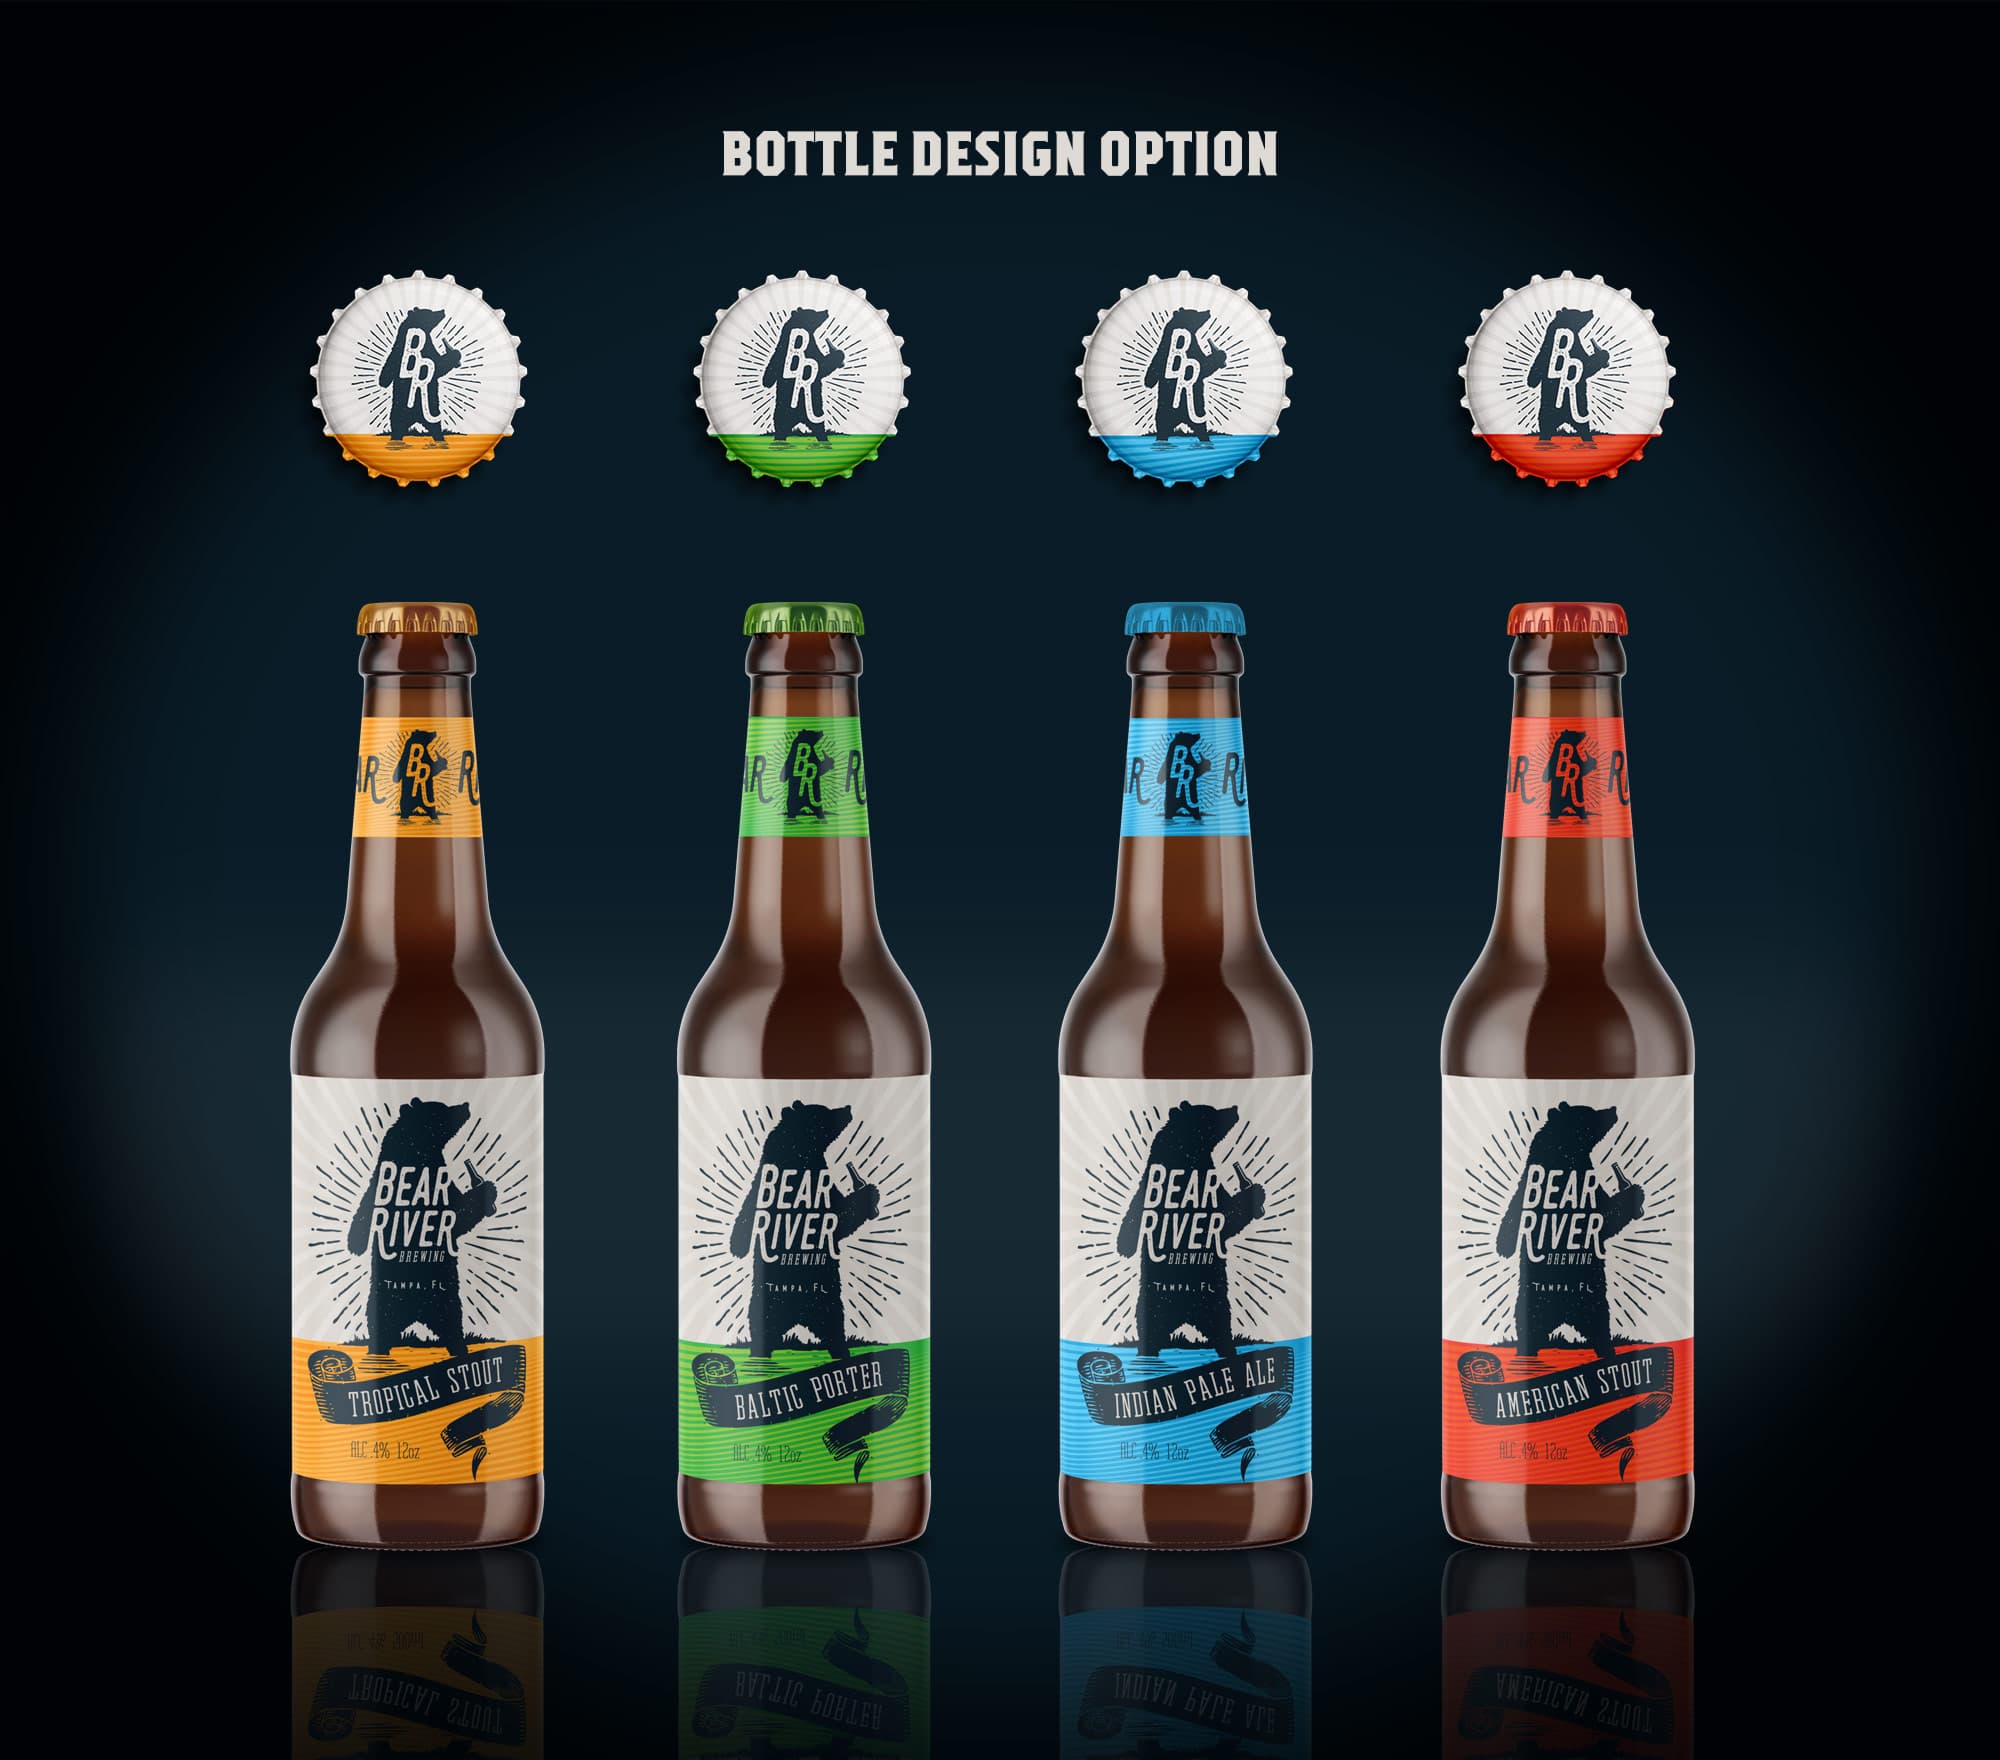 BRB bottle label design option